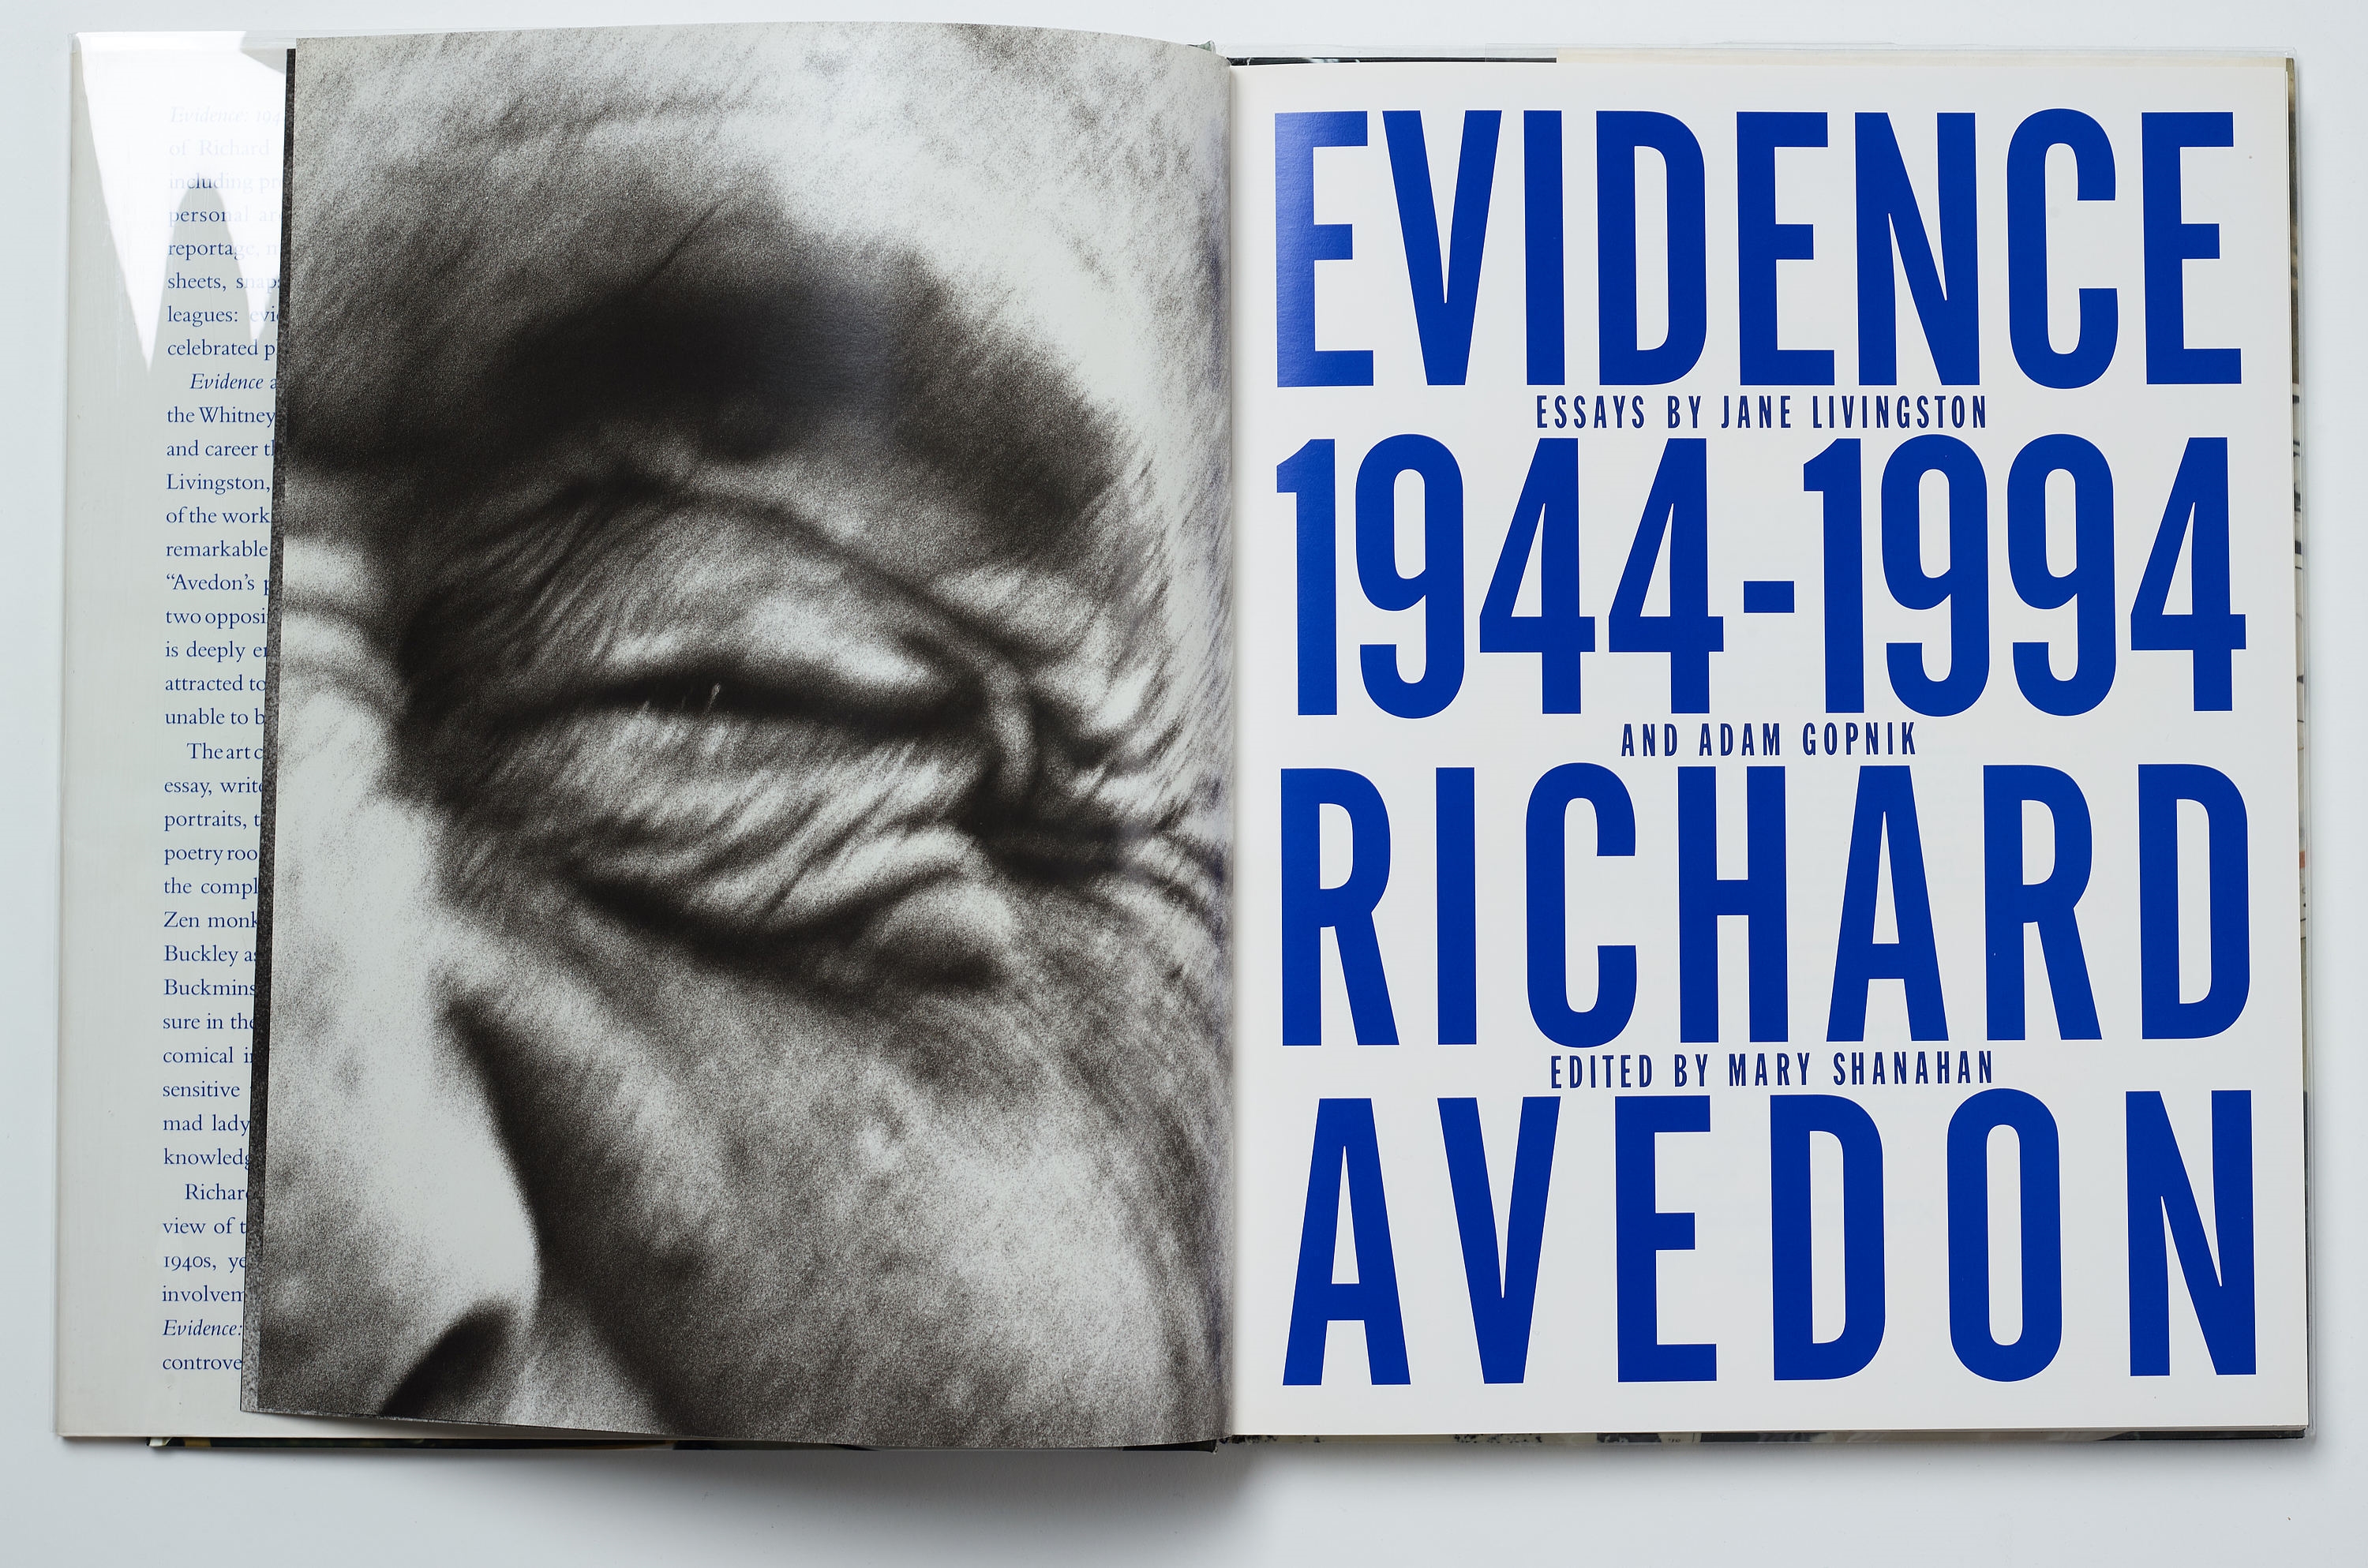 展覧会ポスター『Richard Avedon Retrospective 1944-1994』-